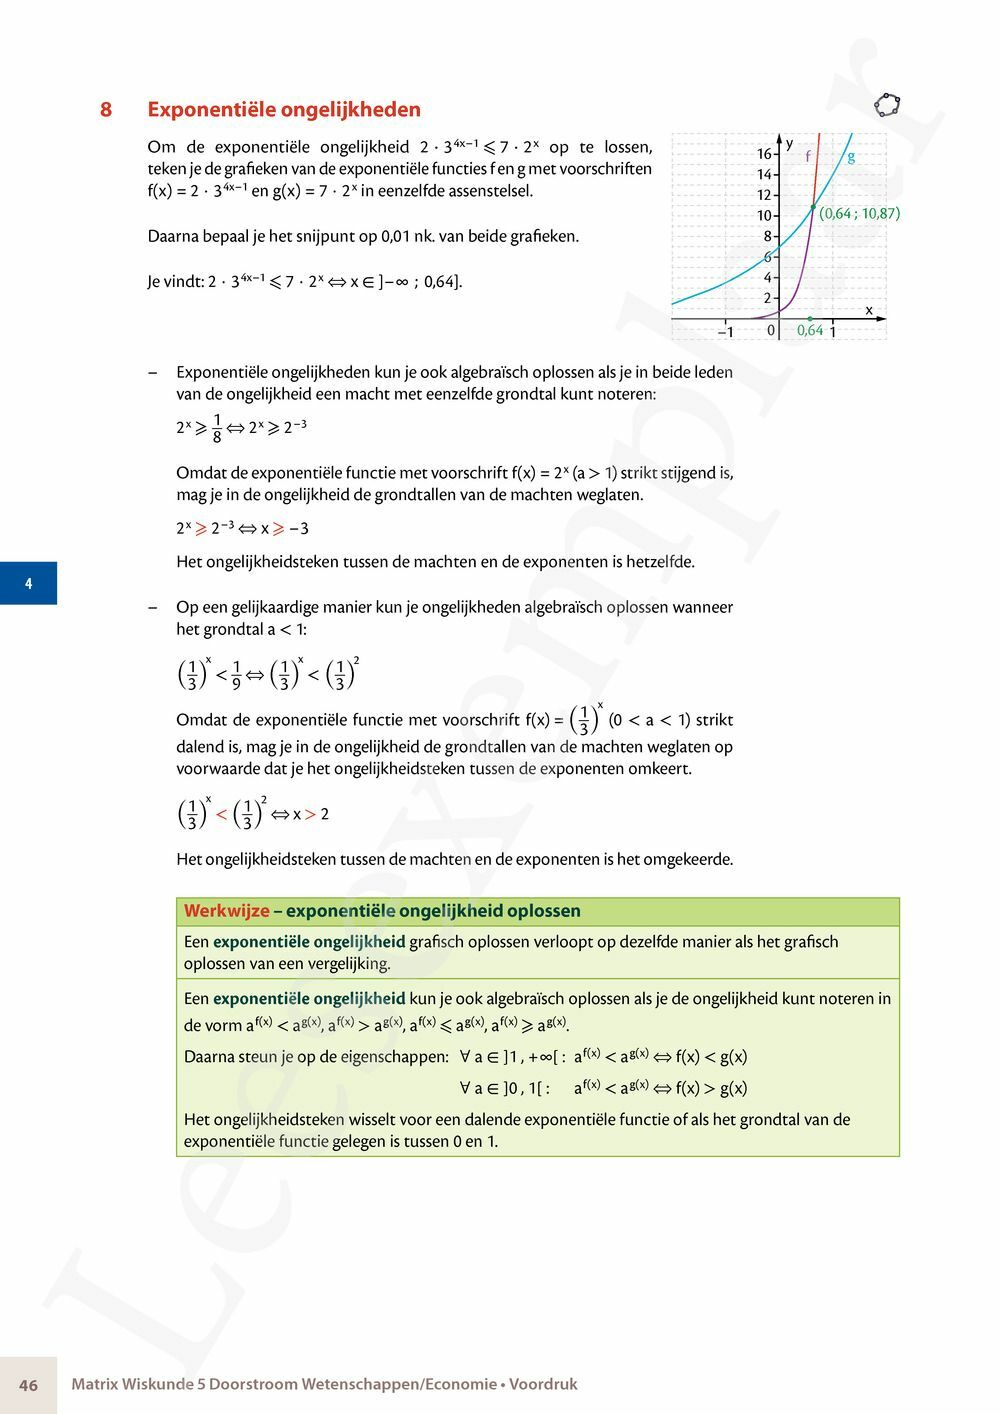 Preview: Matrix Wiskunde 5 Analyse deel 2: rijen, continuïteit, limieten, afgeleiden en verloop van functies Doorstroom Wetenschappen, Doorstroom Economie Handboek (incl. Pelckmans Portaal)